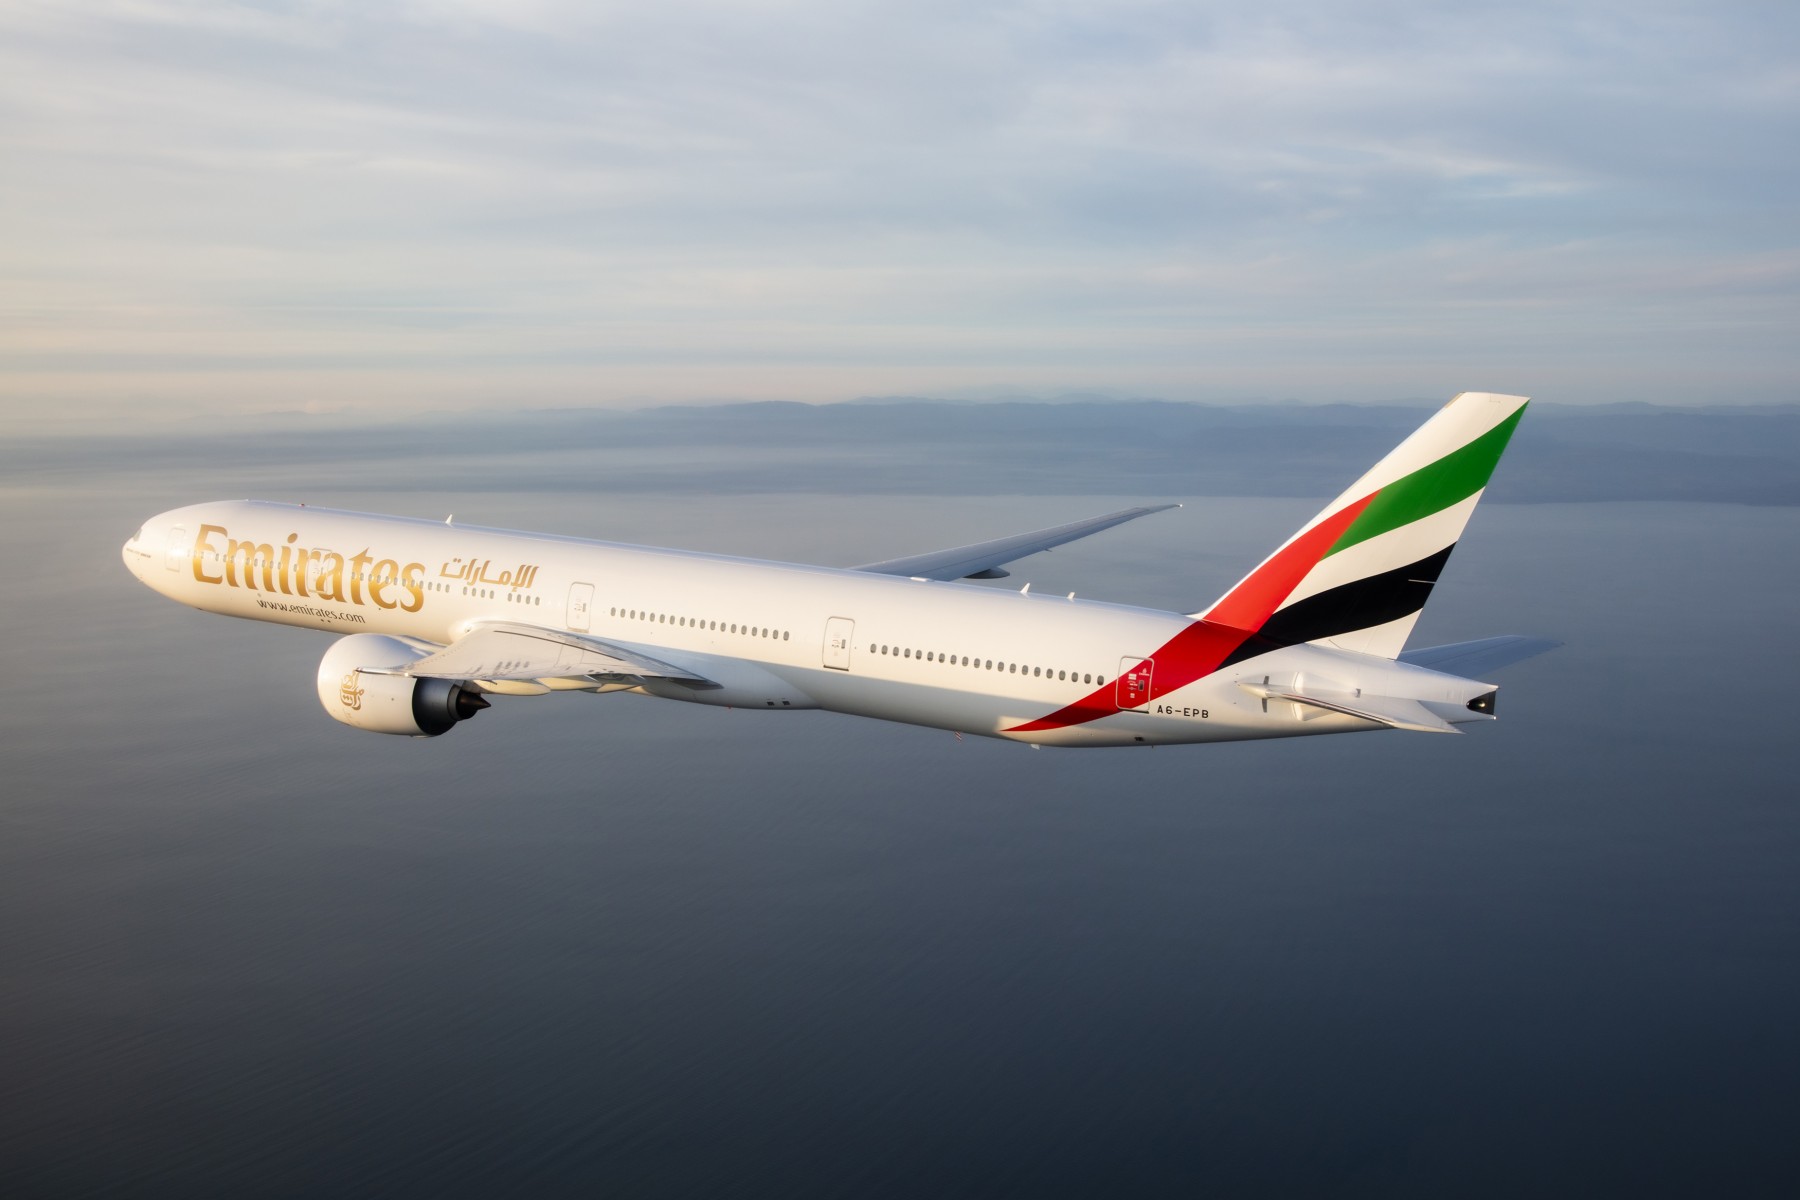 طيران الإمارات تضيف 10 مدن جديدة وتوفر رحلات ربط إلى 40 مدينة اعتبارا من يوليو سفر نيوز